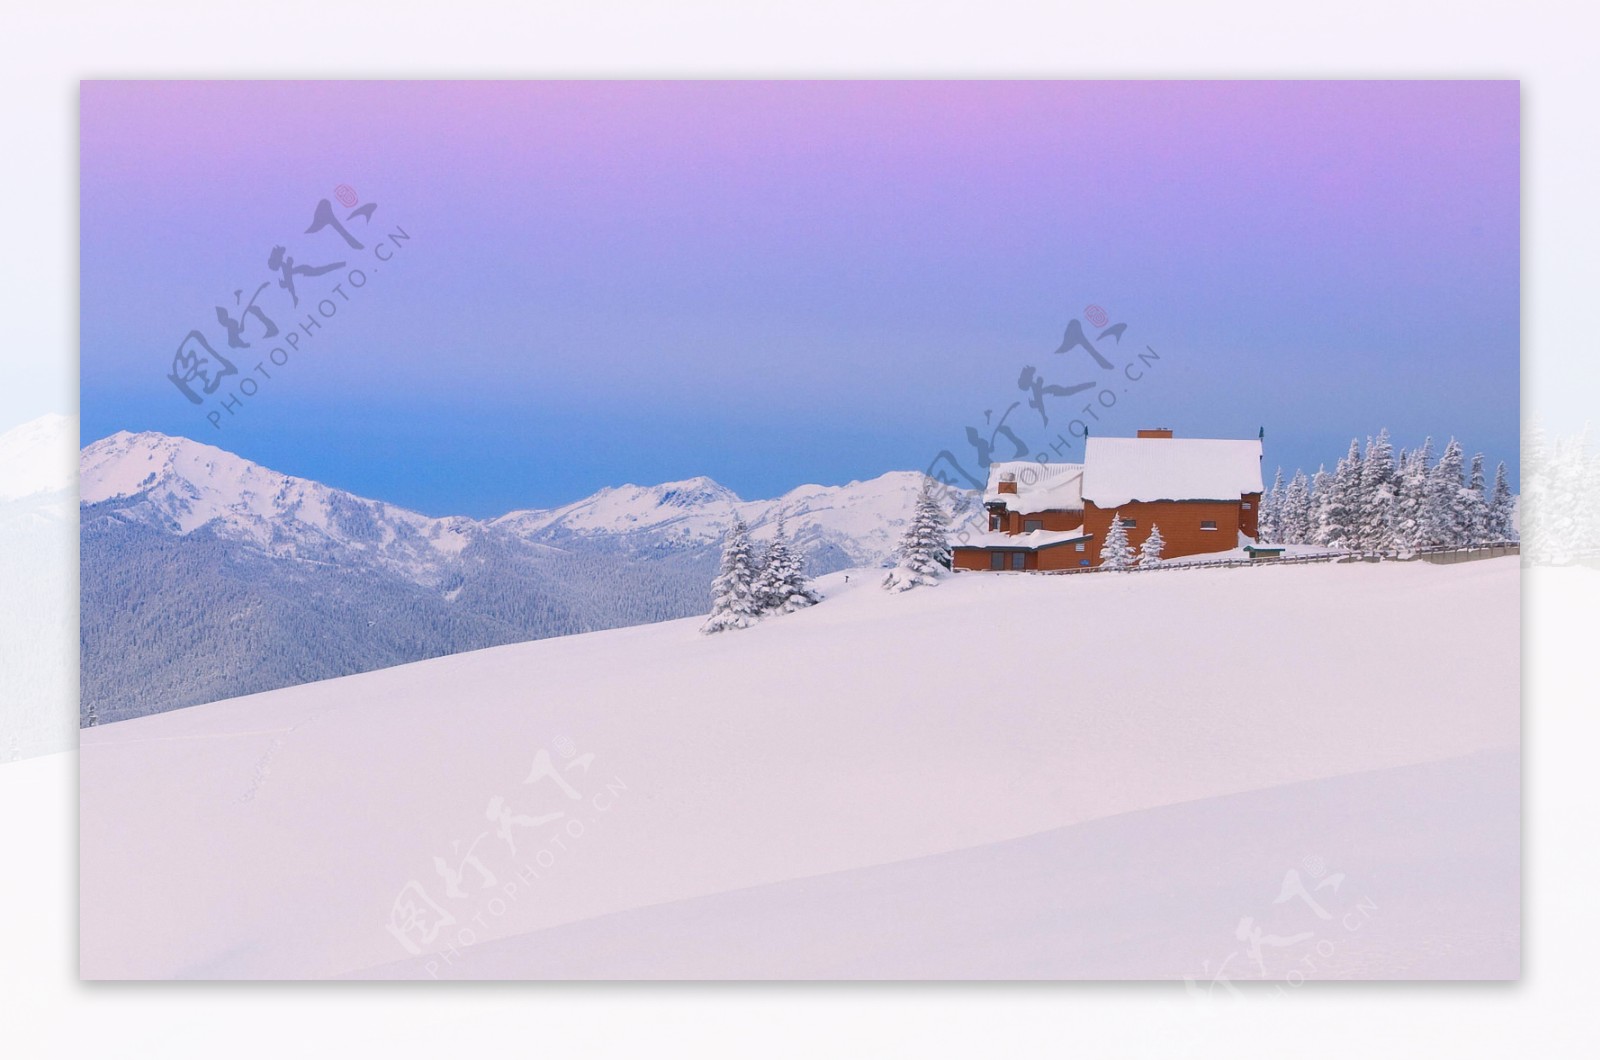 一片雪地和房屋风景图片